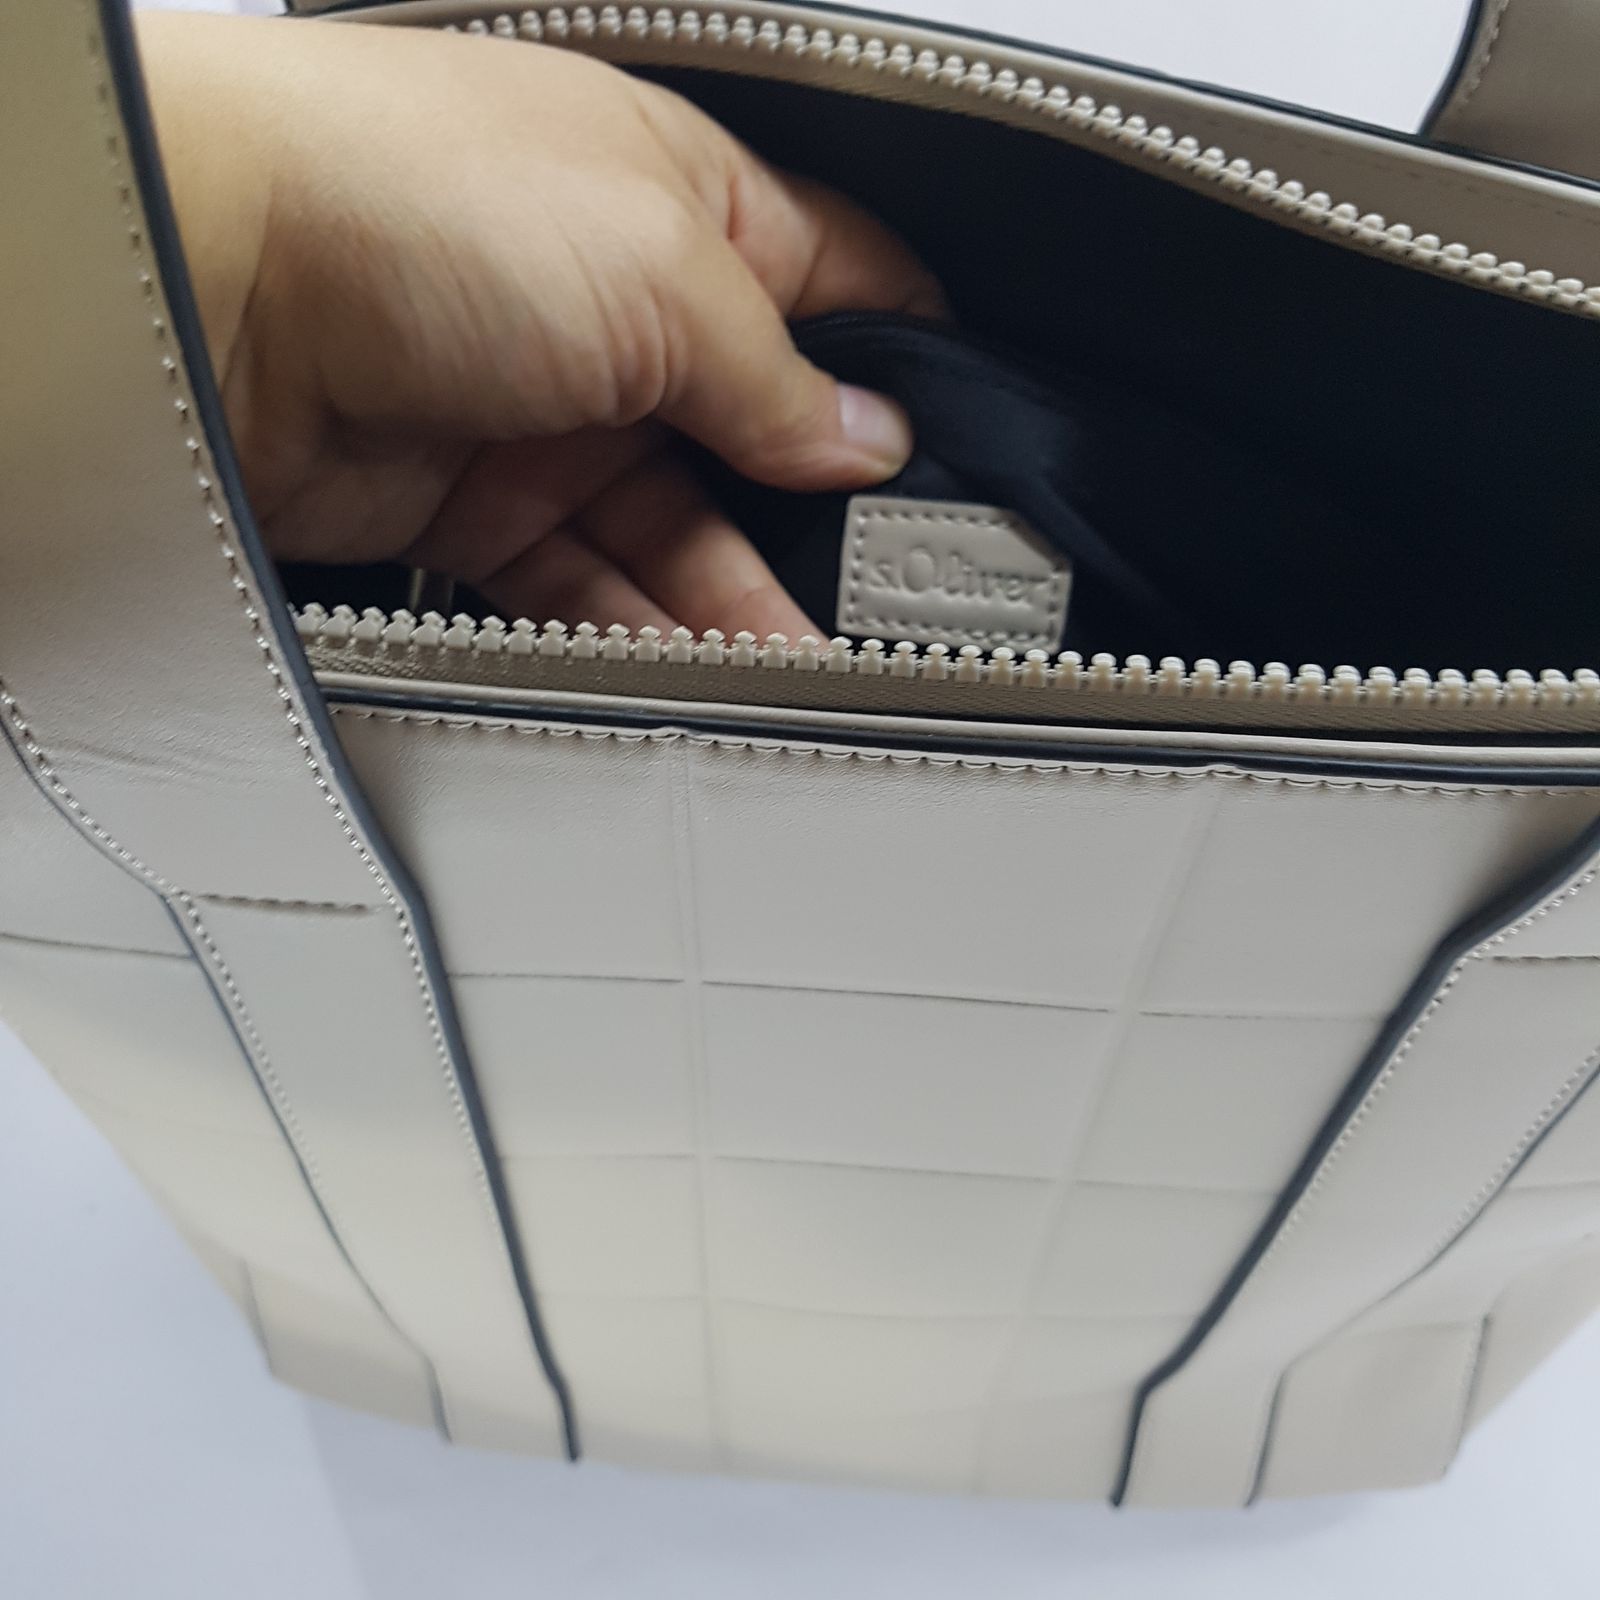 کیف دستی زنانه اس.اولیور مدل S2125622-S2125175 به همراه کیف پول -  - 11